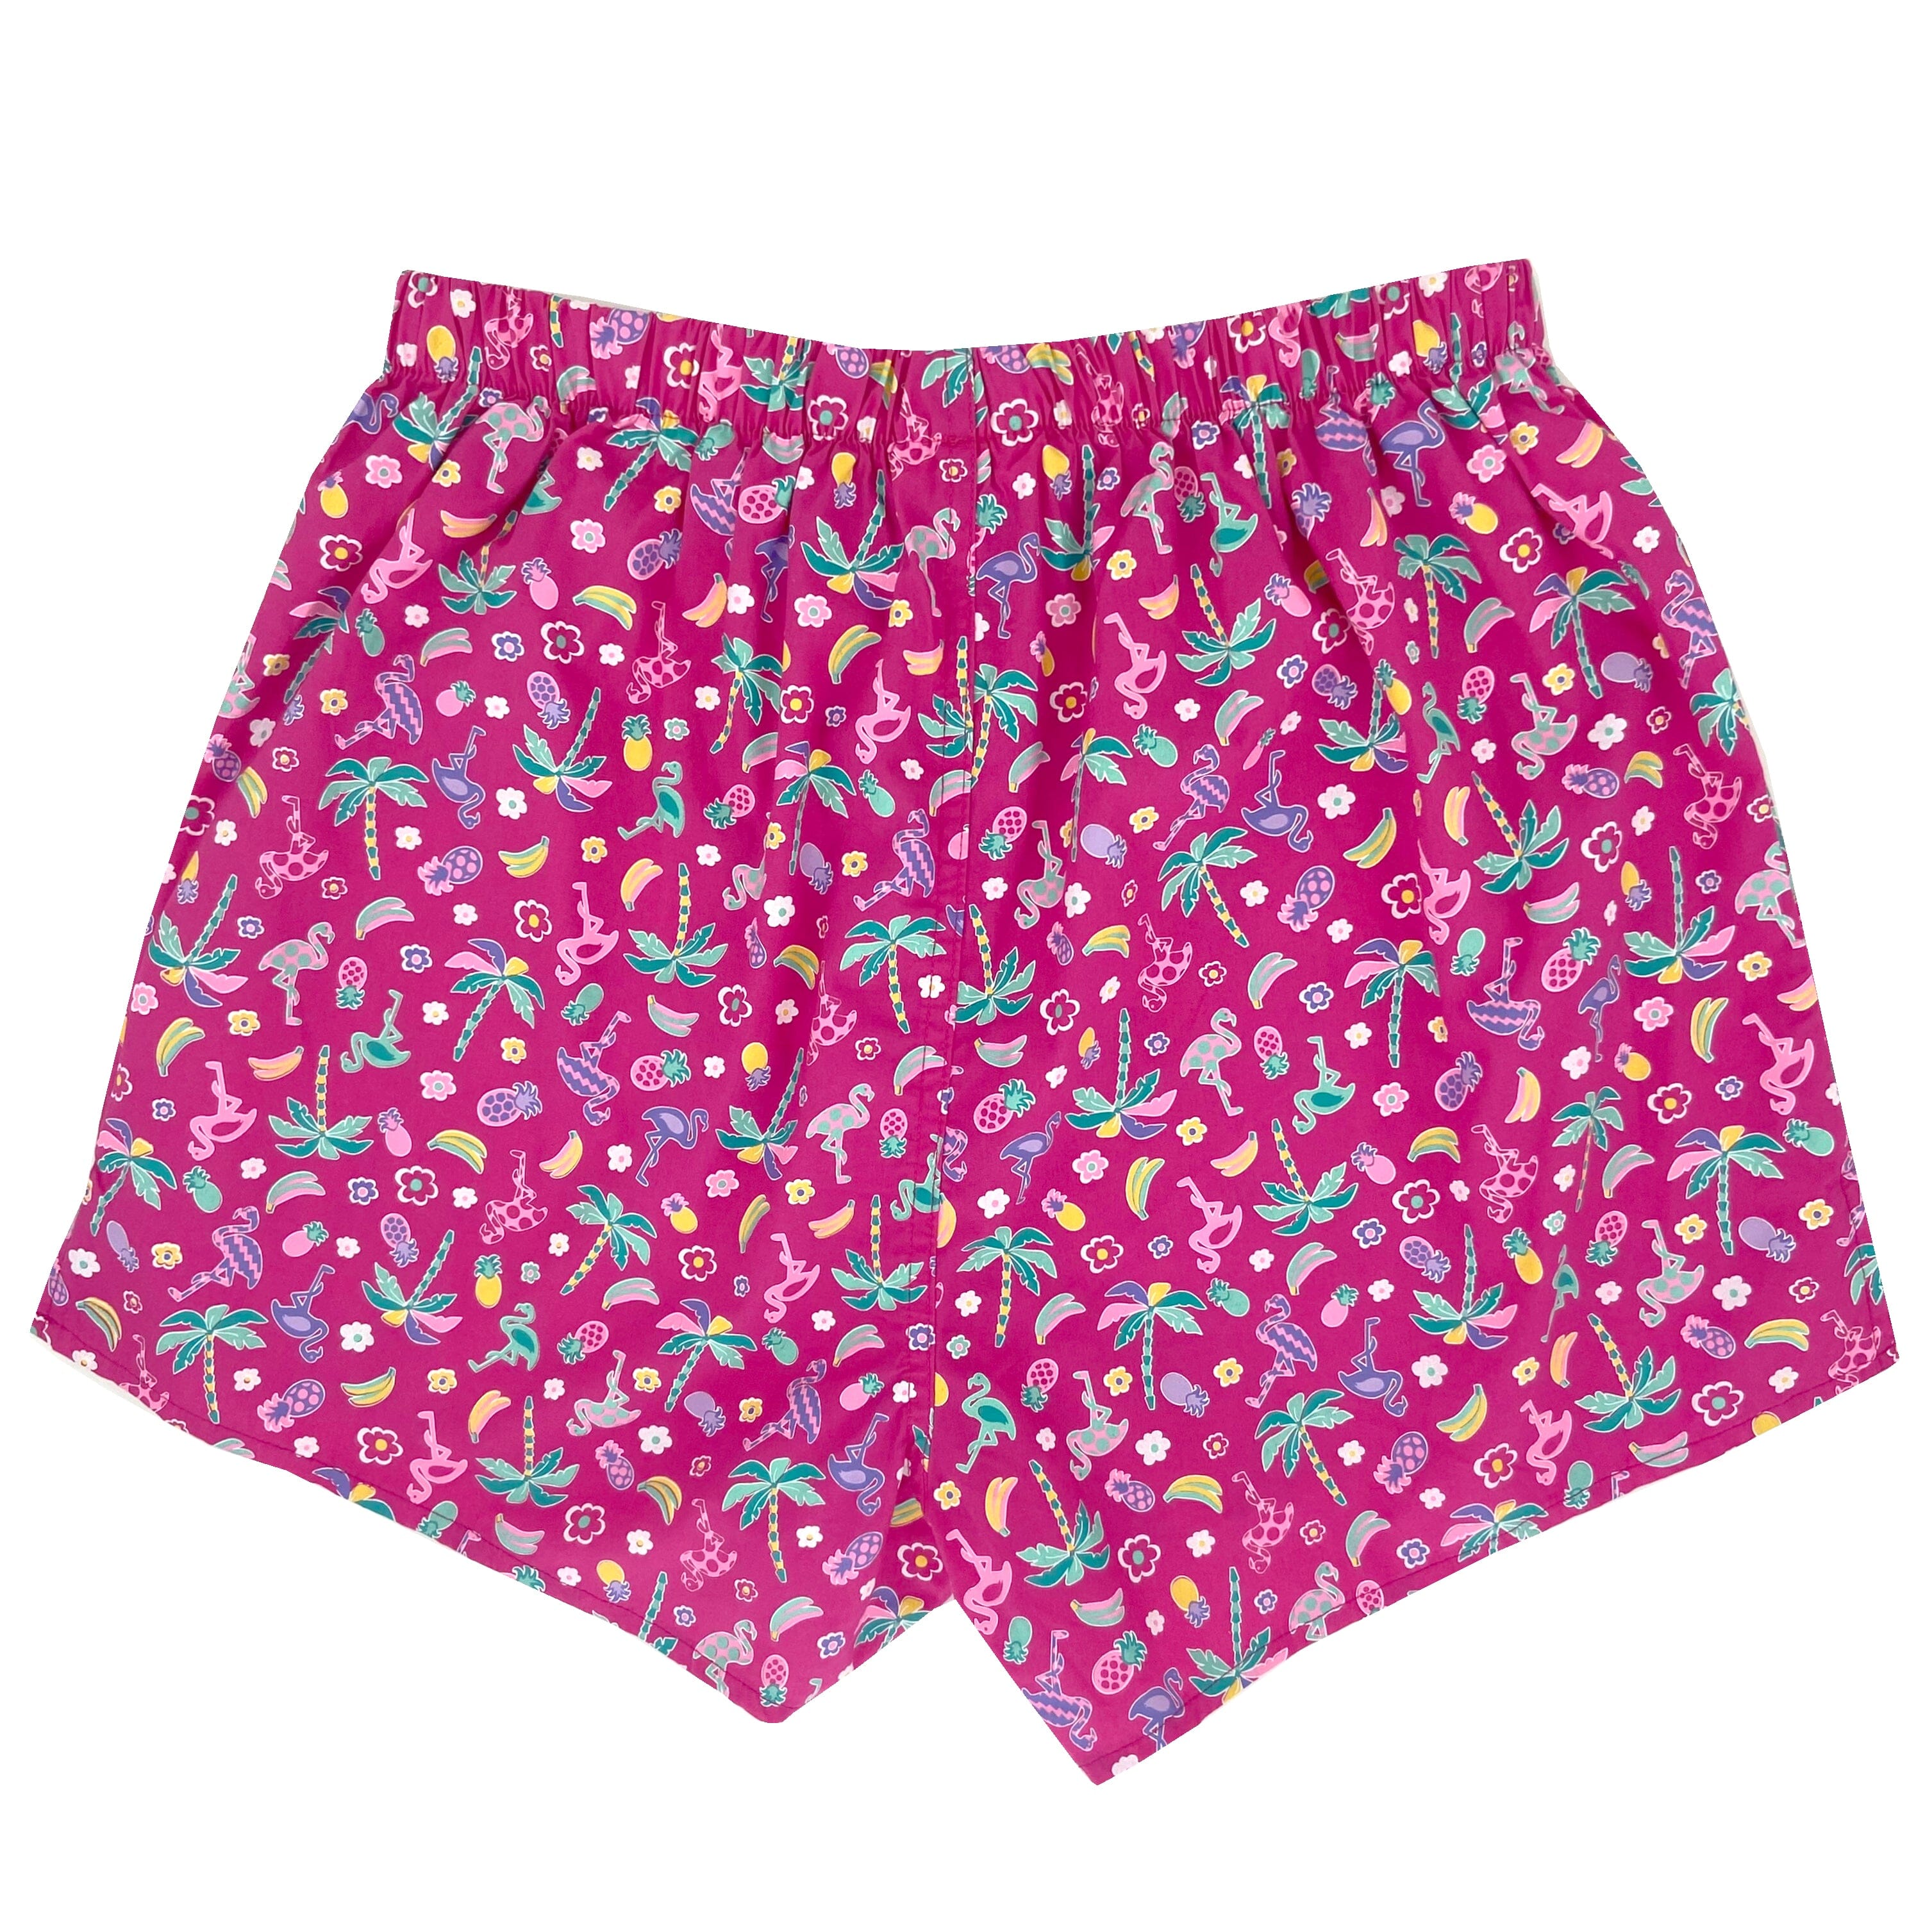 Men's Colorful Tropical Fruit & Flamingo Print Boxer Shorts Underwear